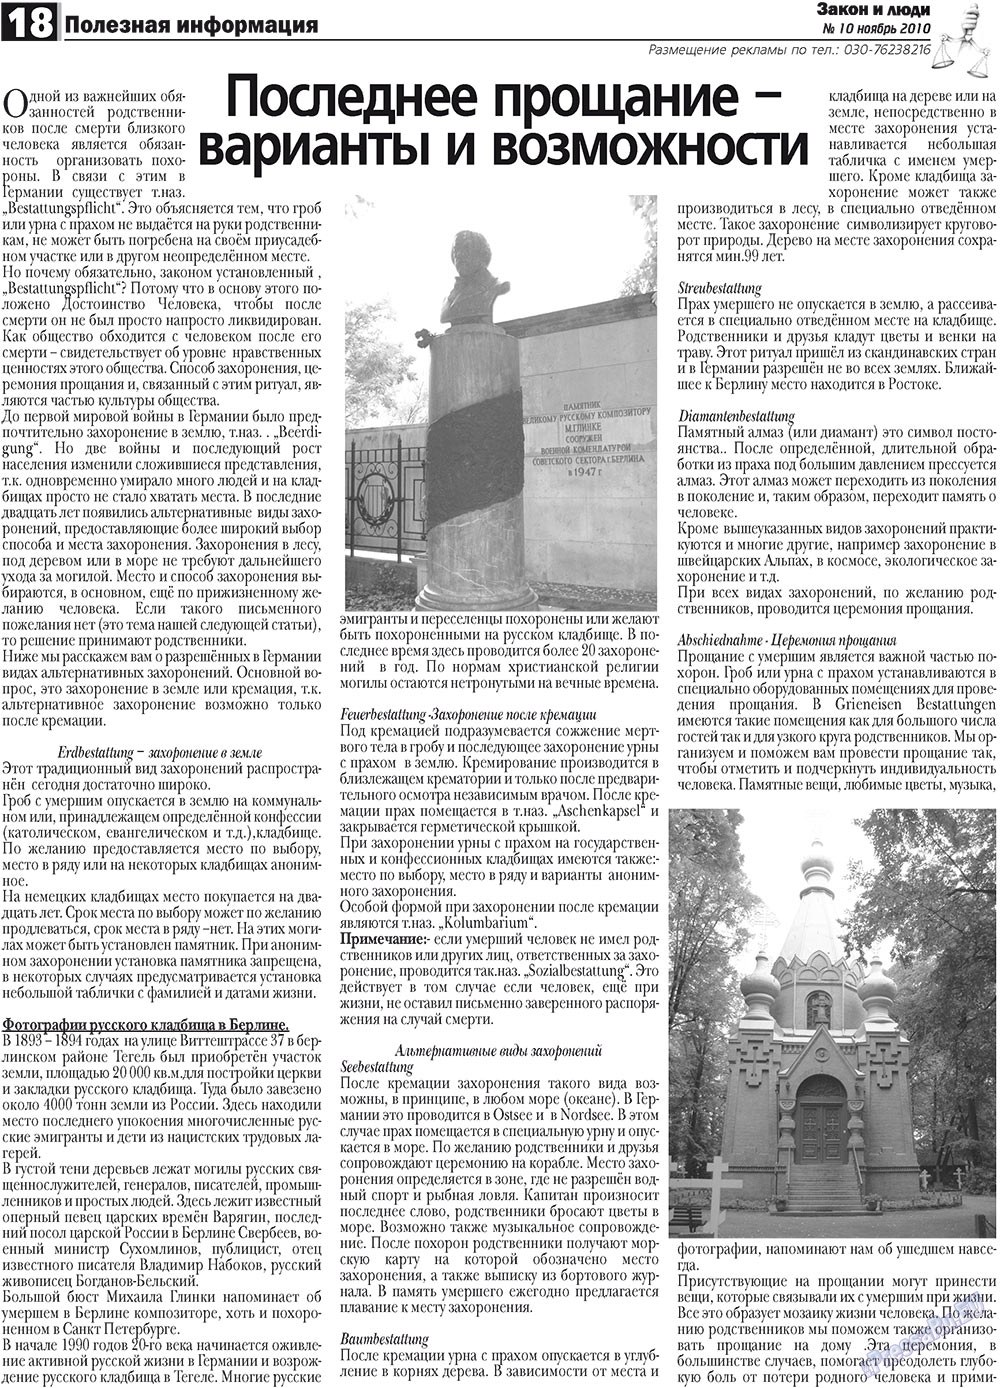 Закон и люди, газета. 2010 №10 стр.18